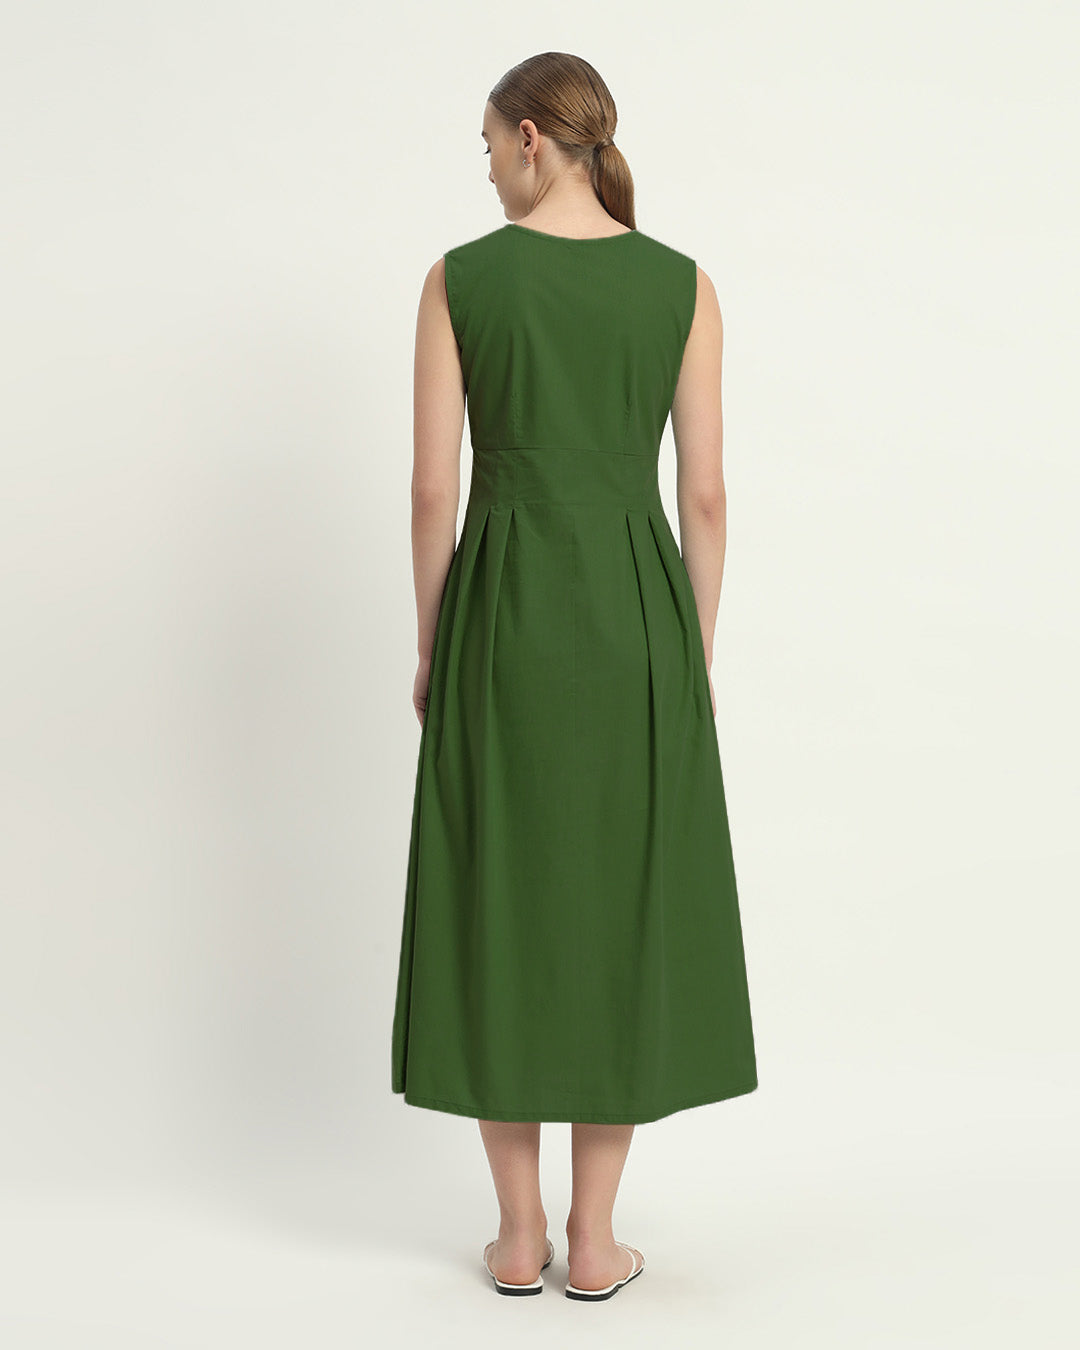 The Mendoza Emerald Cotton Dress